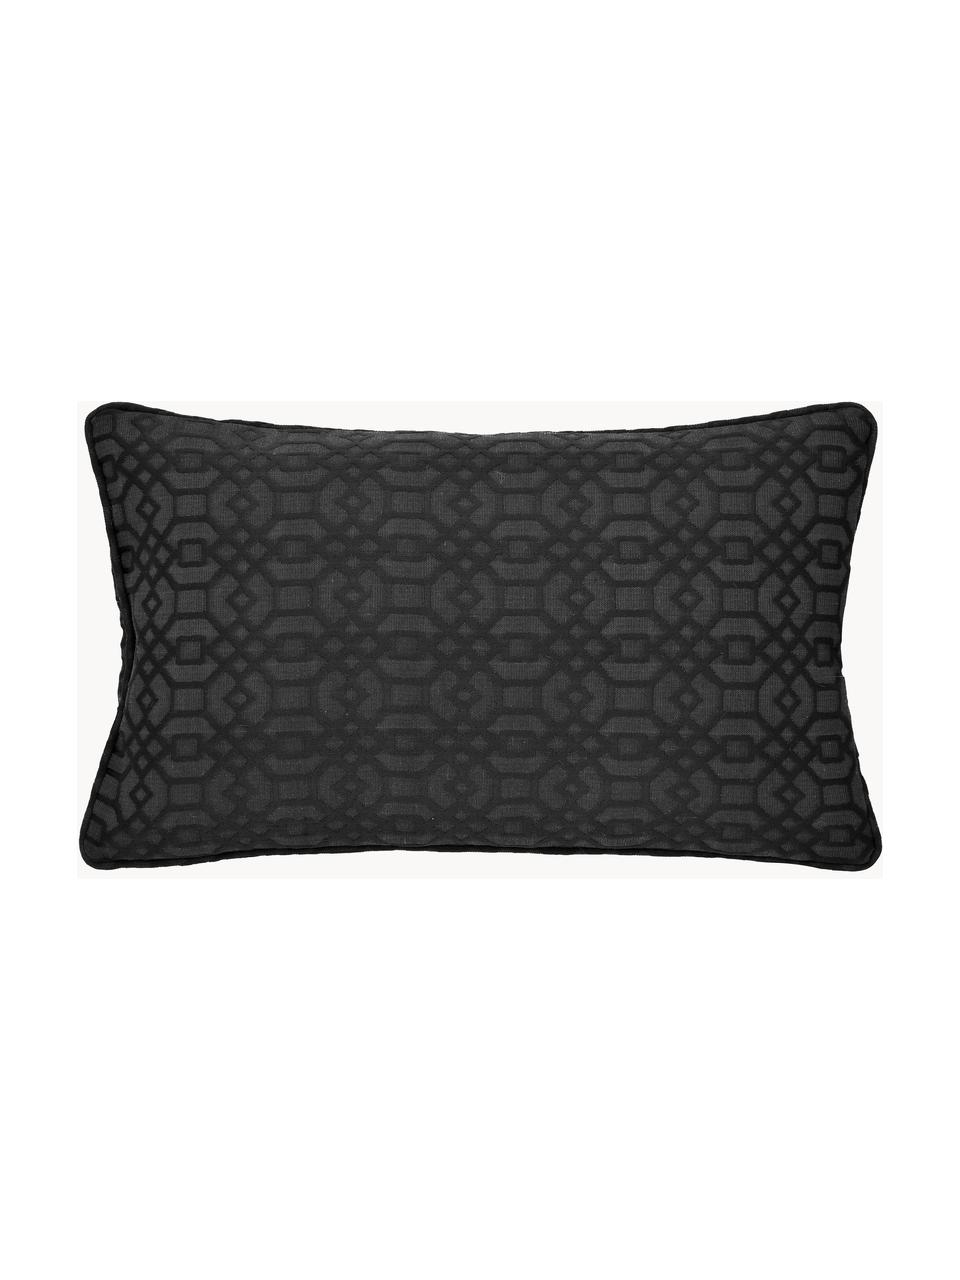 Housse de coussin rectangulaire noire Feliz, 60 % coton, 40 % polyester, Anthracite, larg. 30 x long. 50 cm